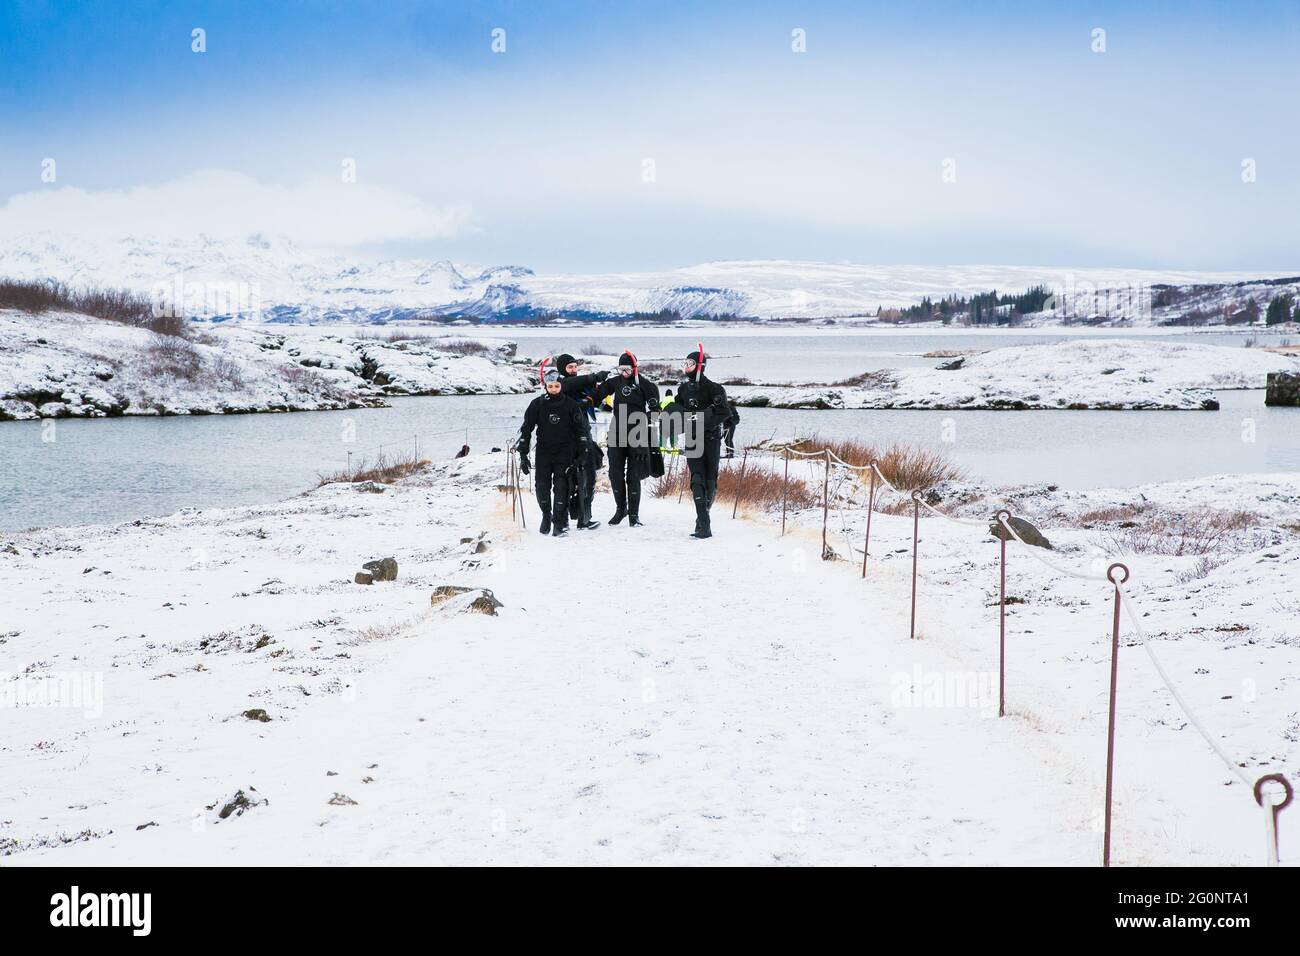 Silfra, Islande-fév 19, 2020: Snorkelers se préparant à entrer dans l'eau à Silfra Rift, le lieu où sont eurasiens et la plaque tectonique américaine Banque D'Images